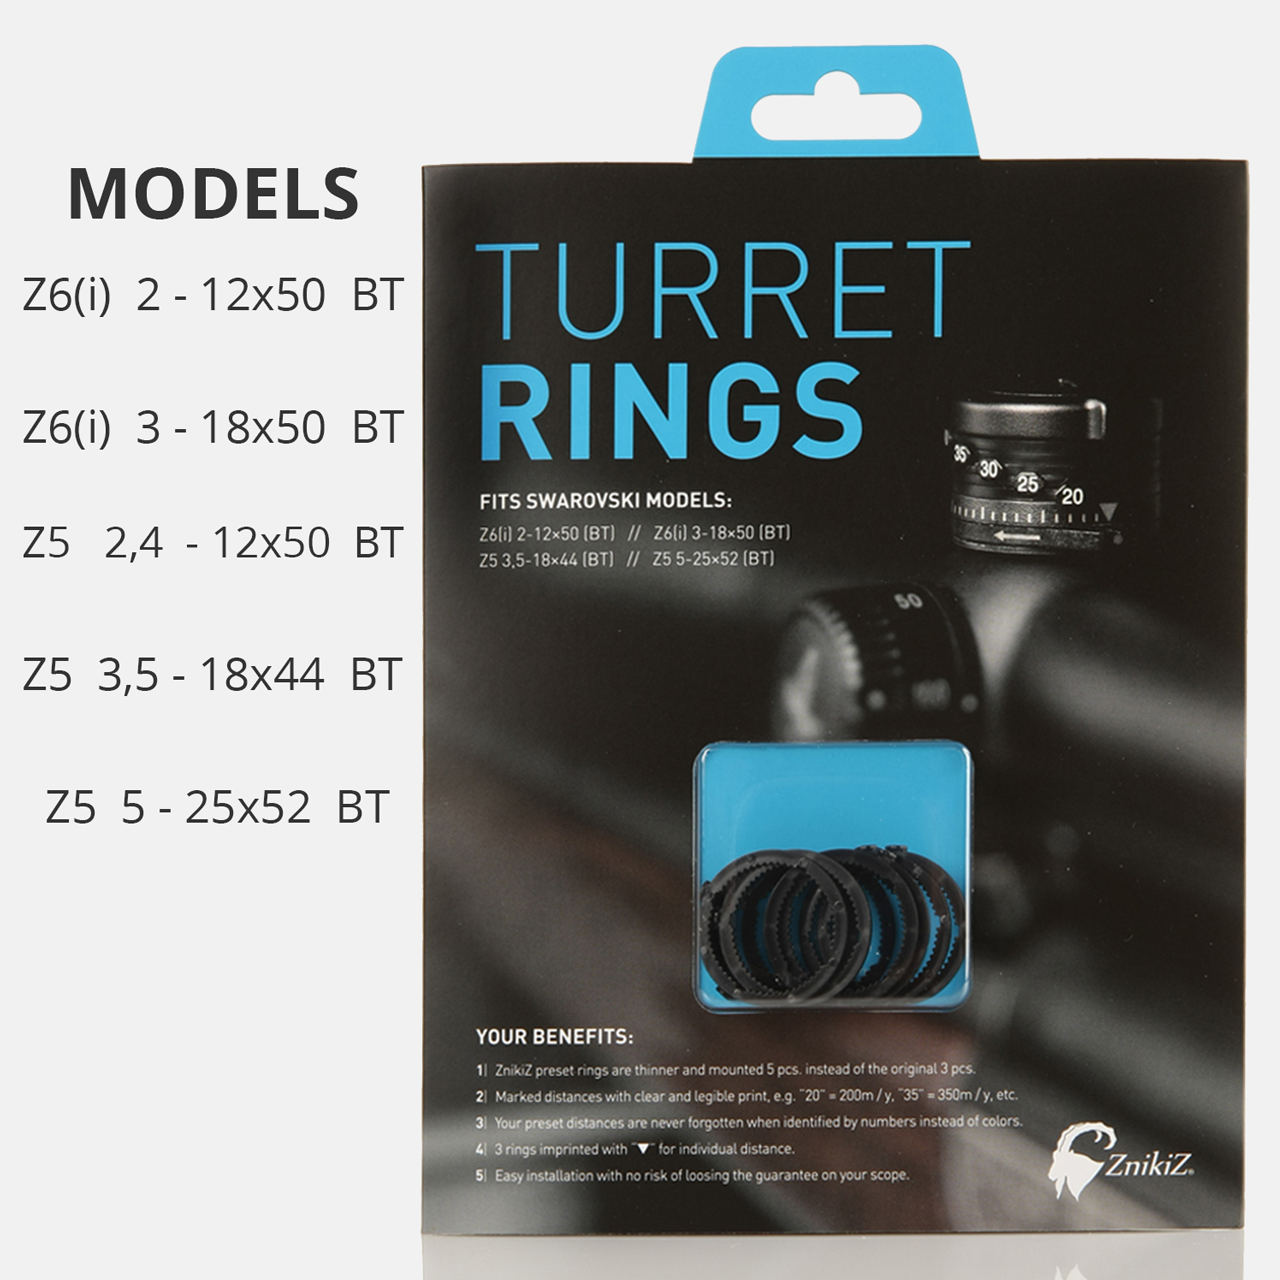 ZnikiZ Turret rings for Z5/Z6